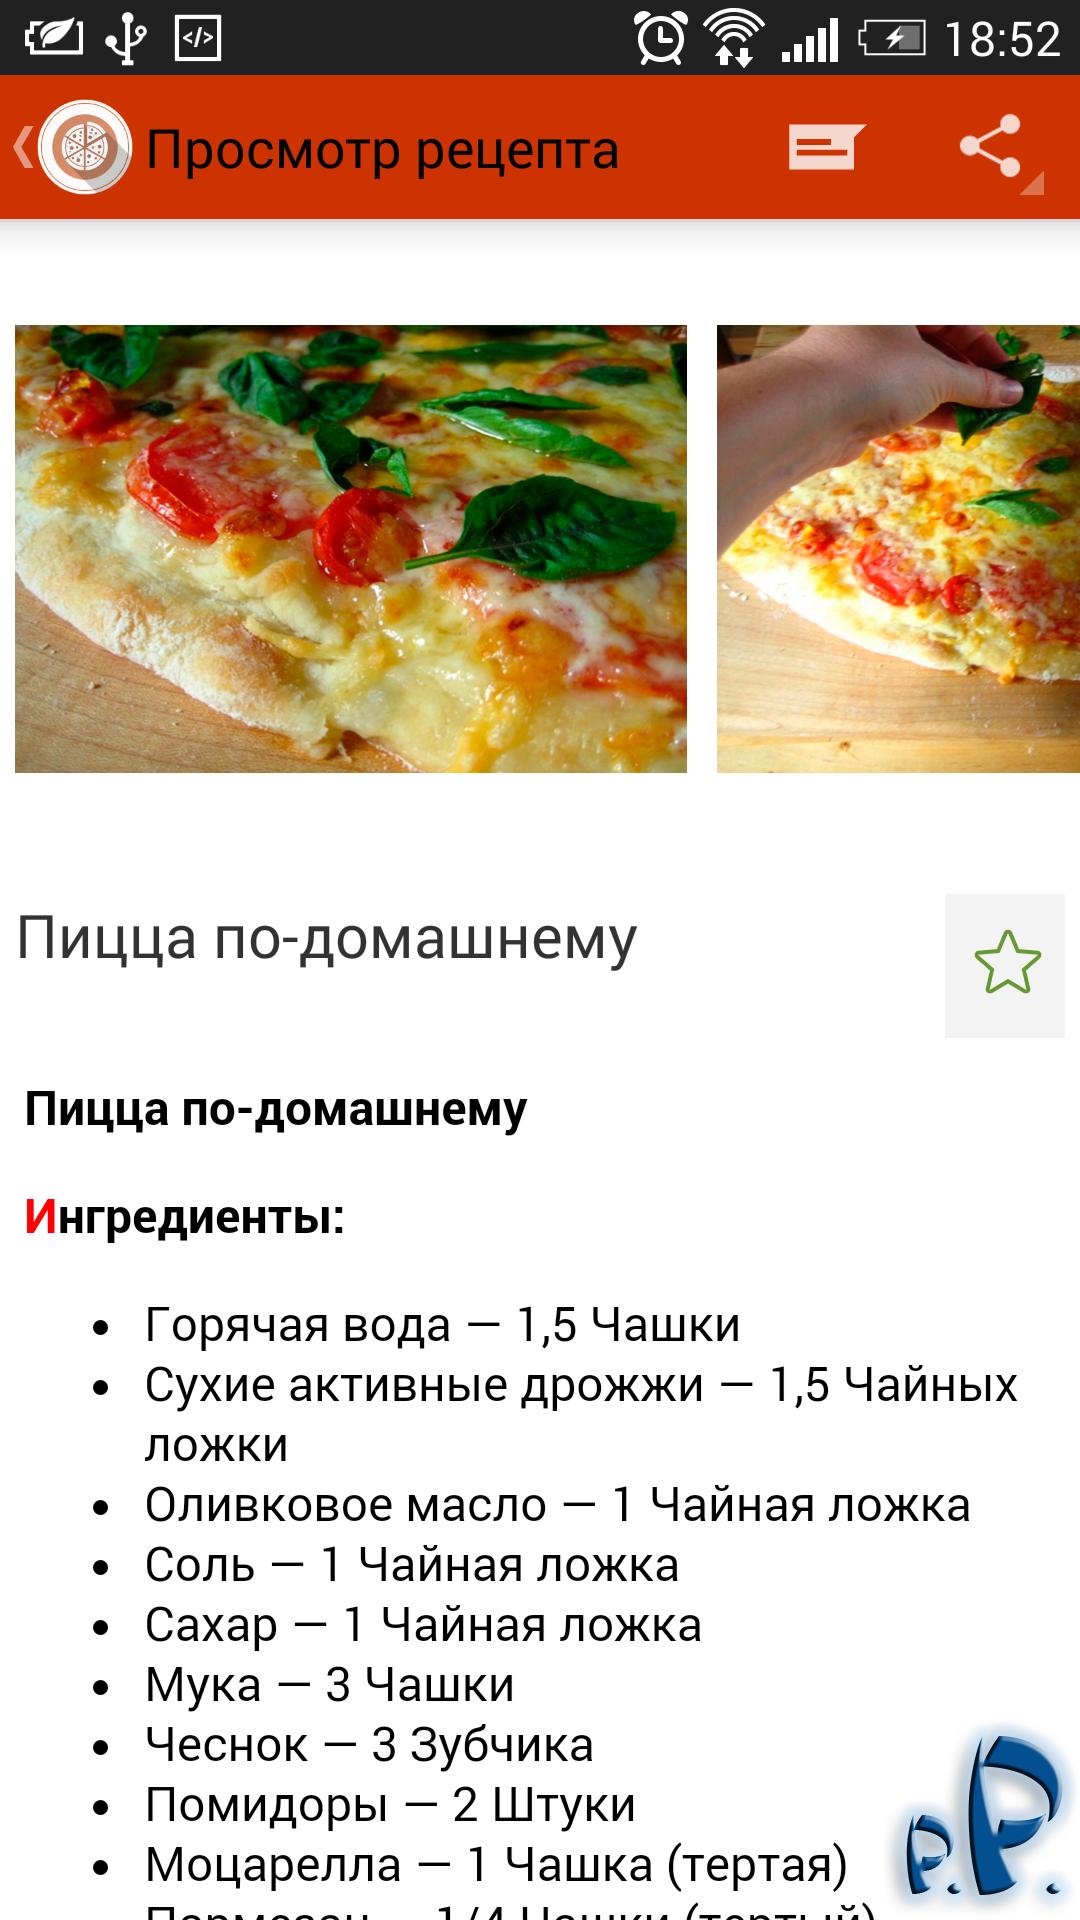 хрустящее тесто для пиццы рецепт без дрожжей фото 23